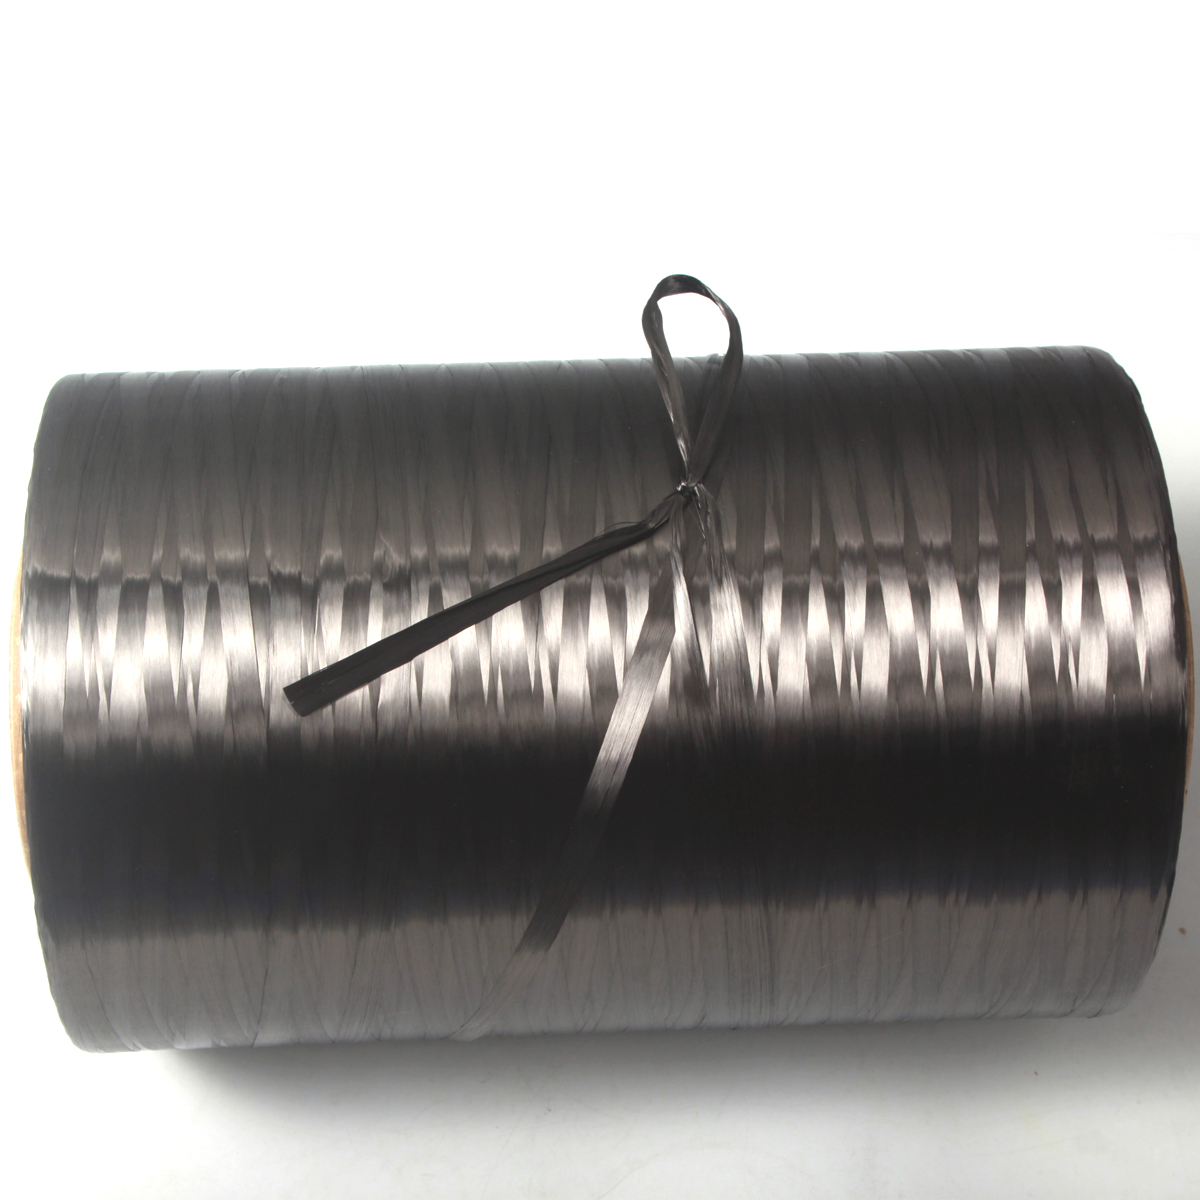 高品质 12K 4kg 碳纤维长丝纱